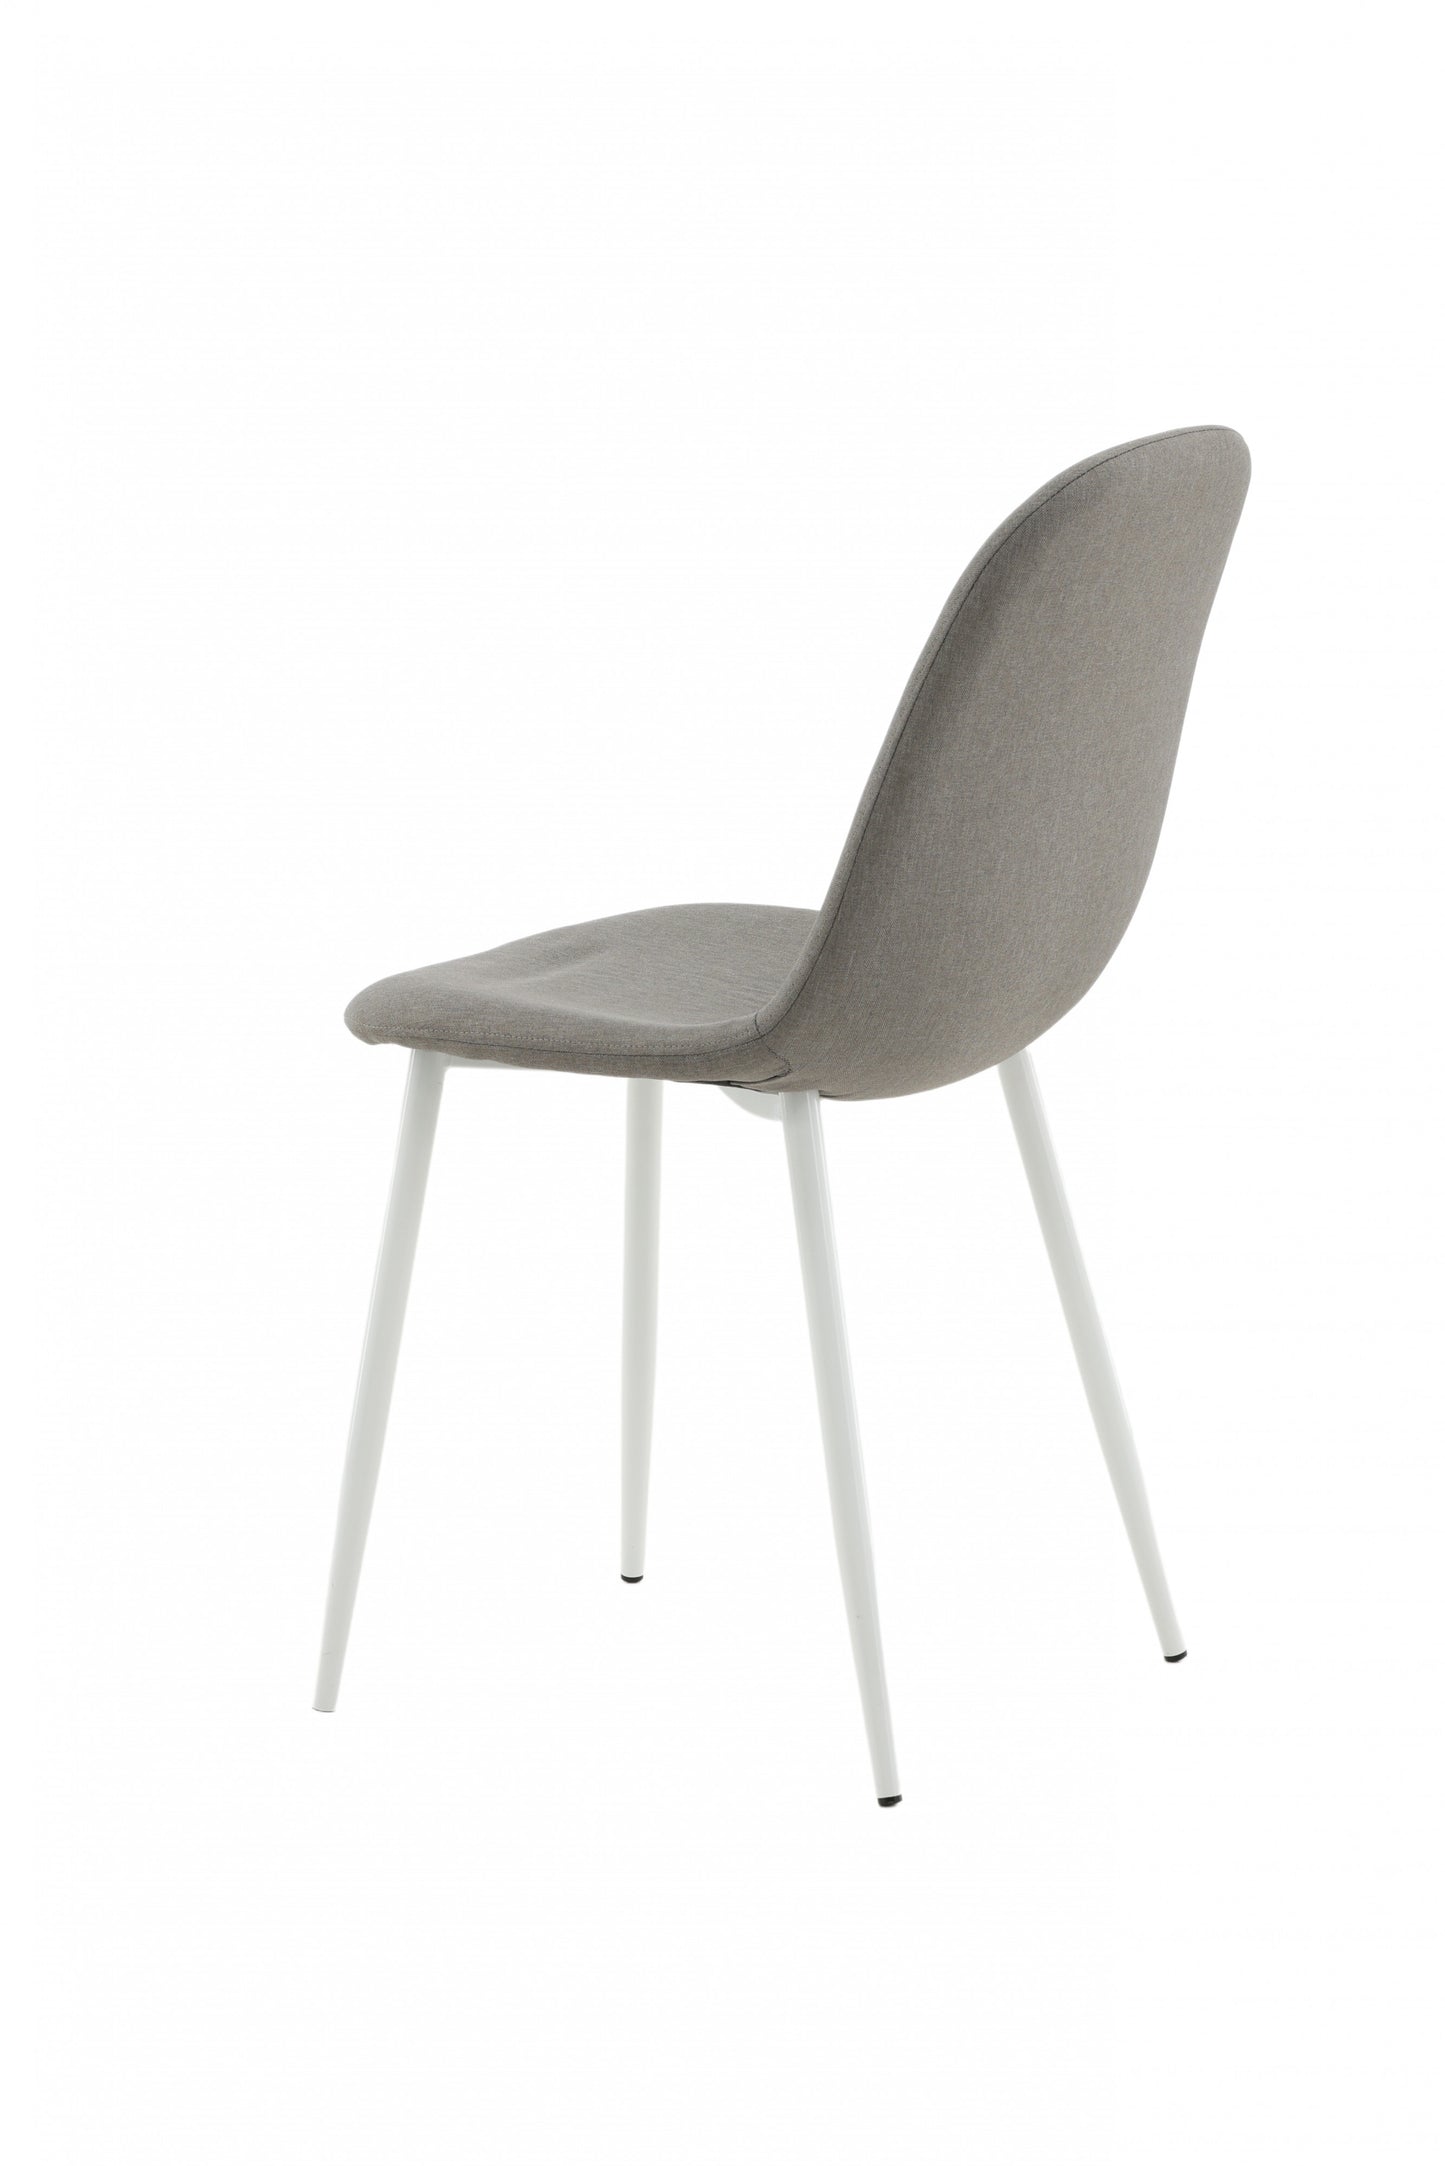 Venture-Design | Polar Stuhl - Grauer Stoff, Weiße Beine